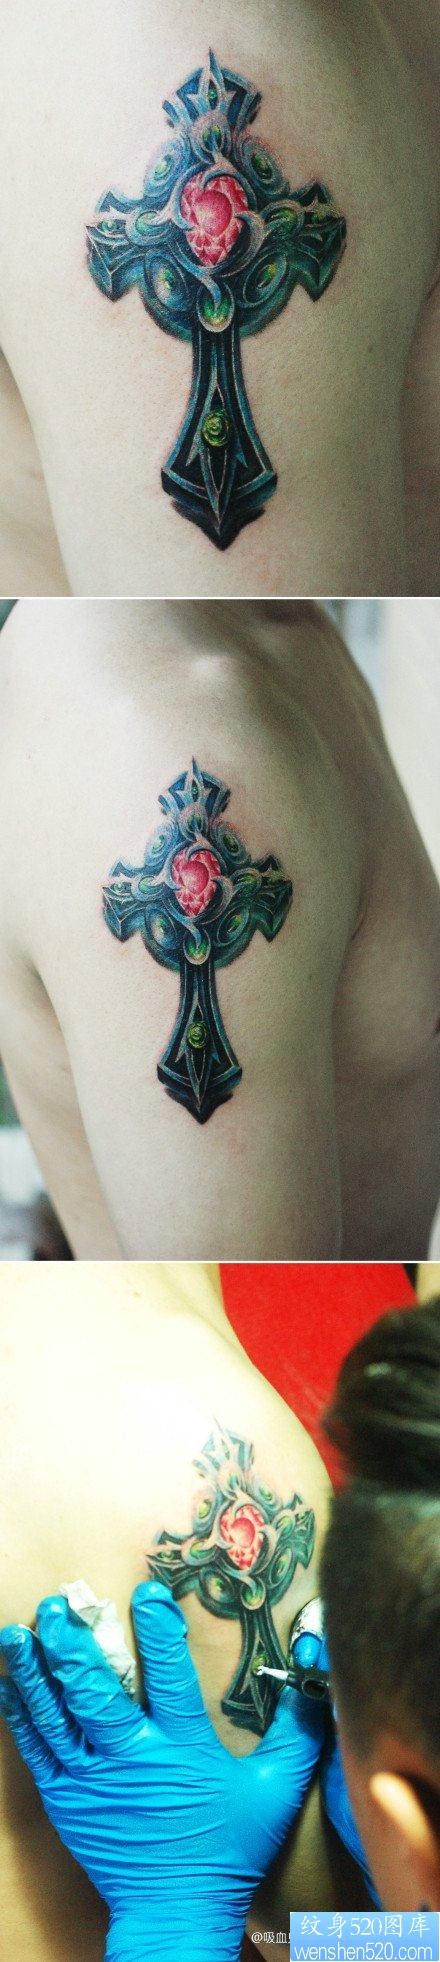 手臂很帅精美的一张十字架纹身图片